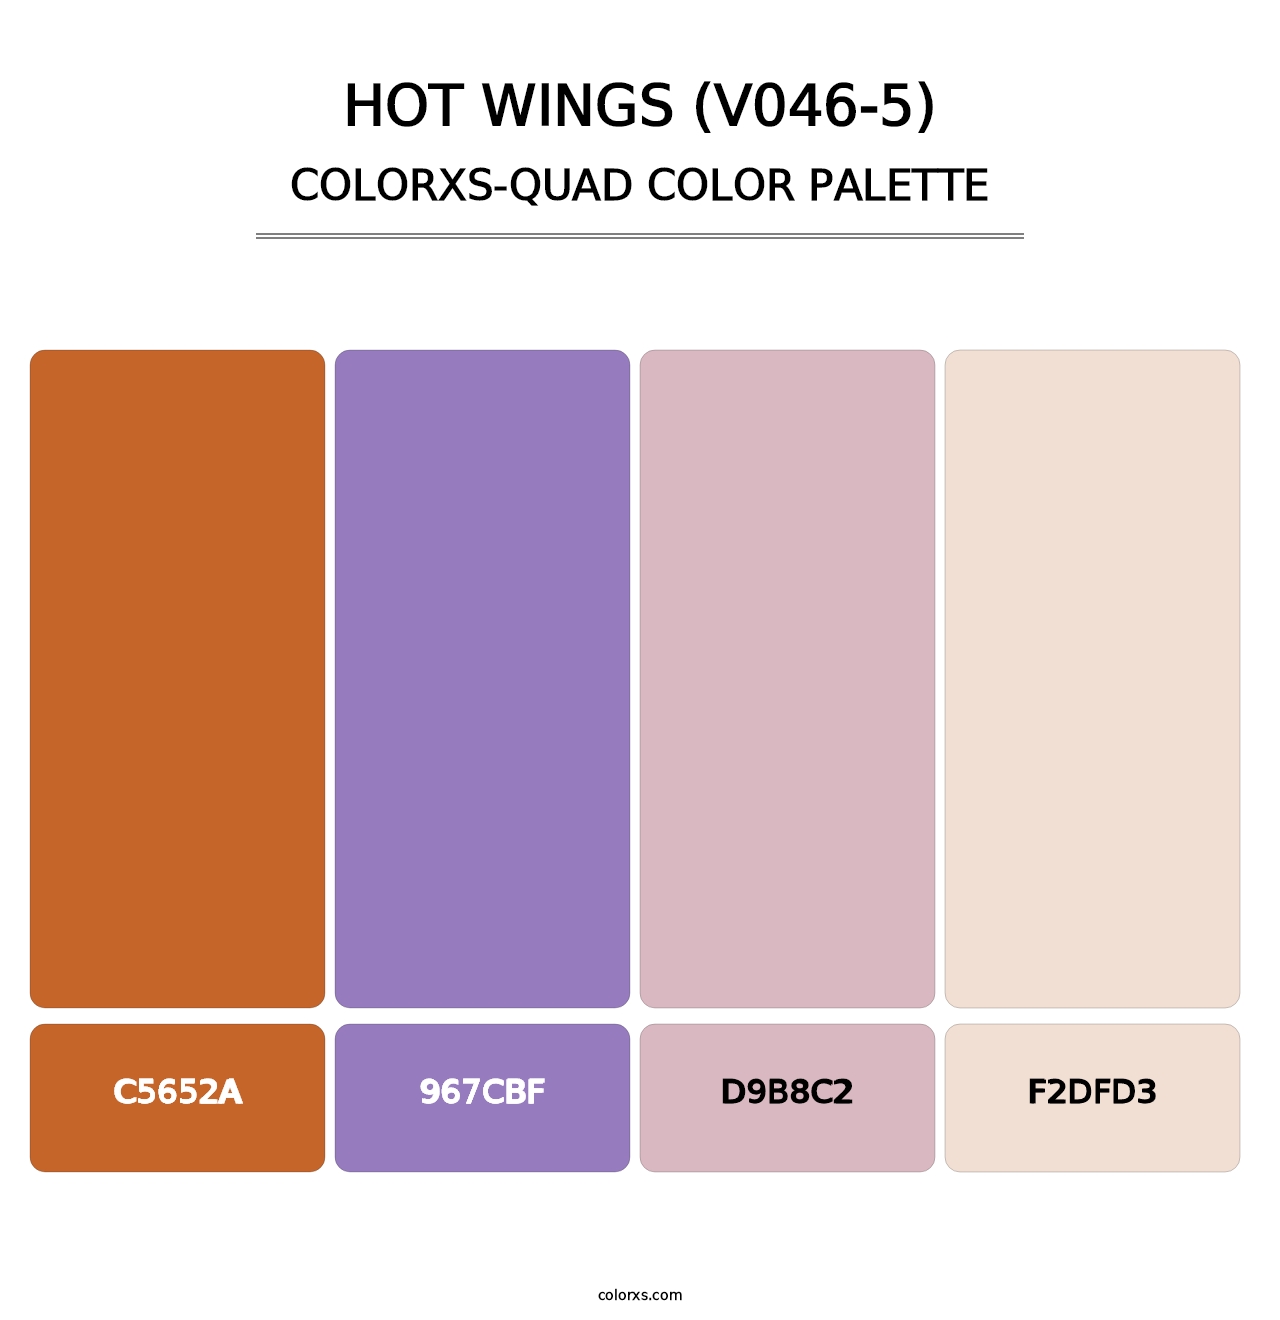 Hot Wings (V046-5) - Colorxs Quad Palette